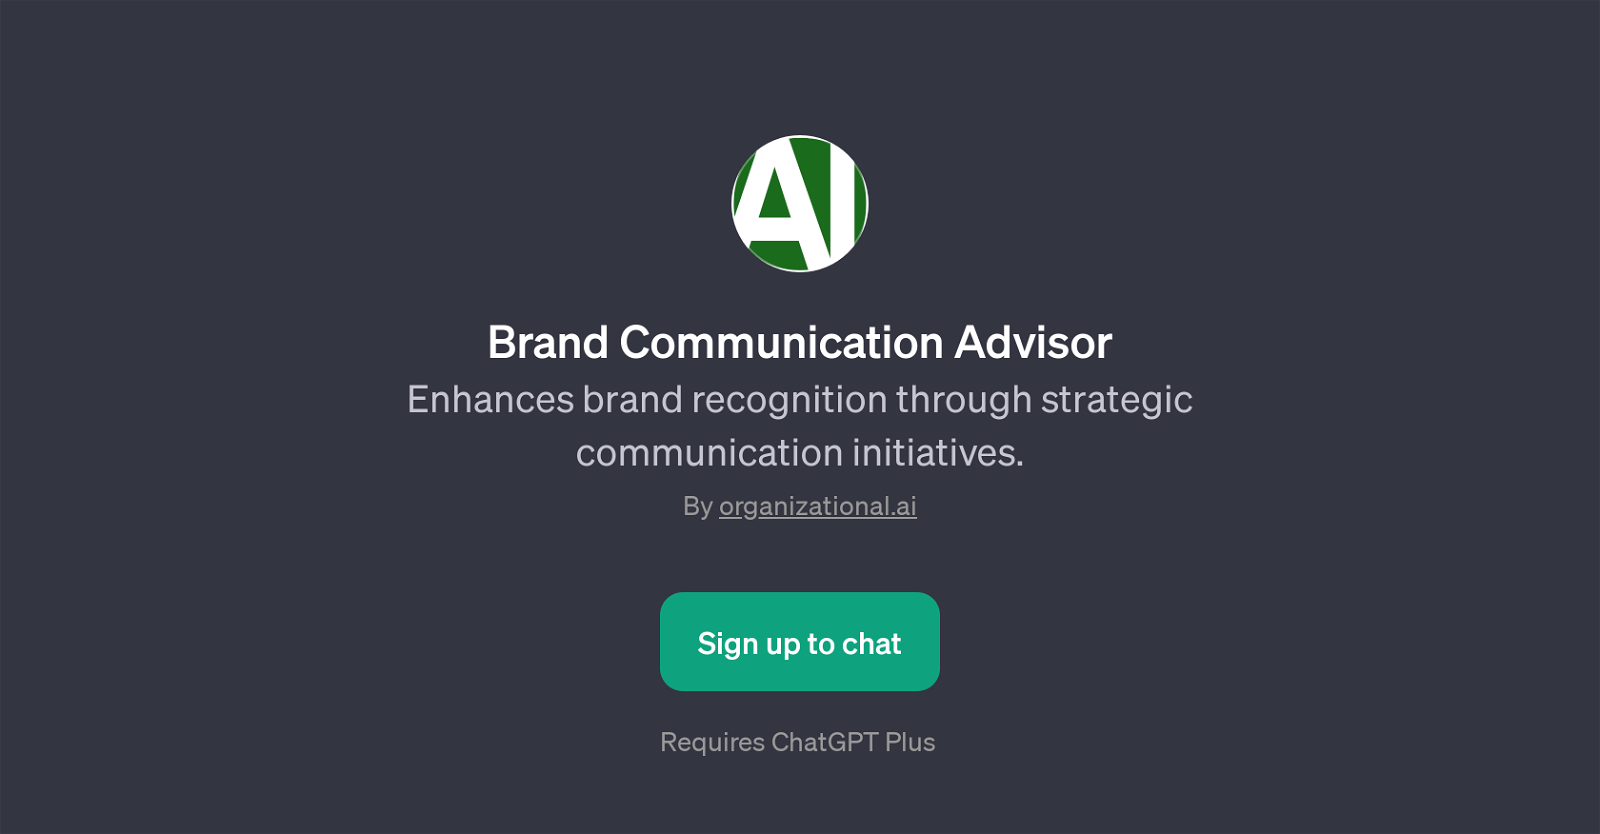 Brand Communication Advisor website